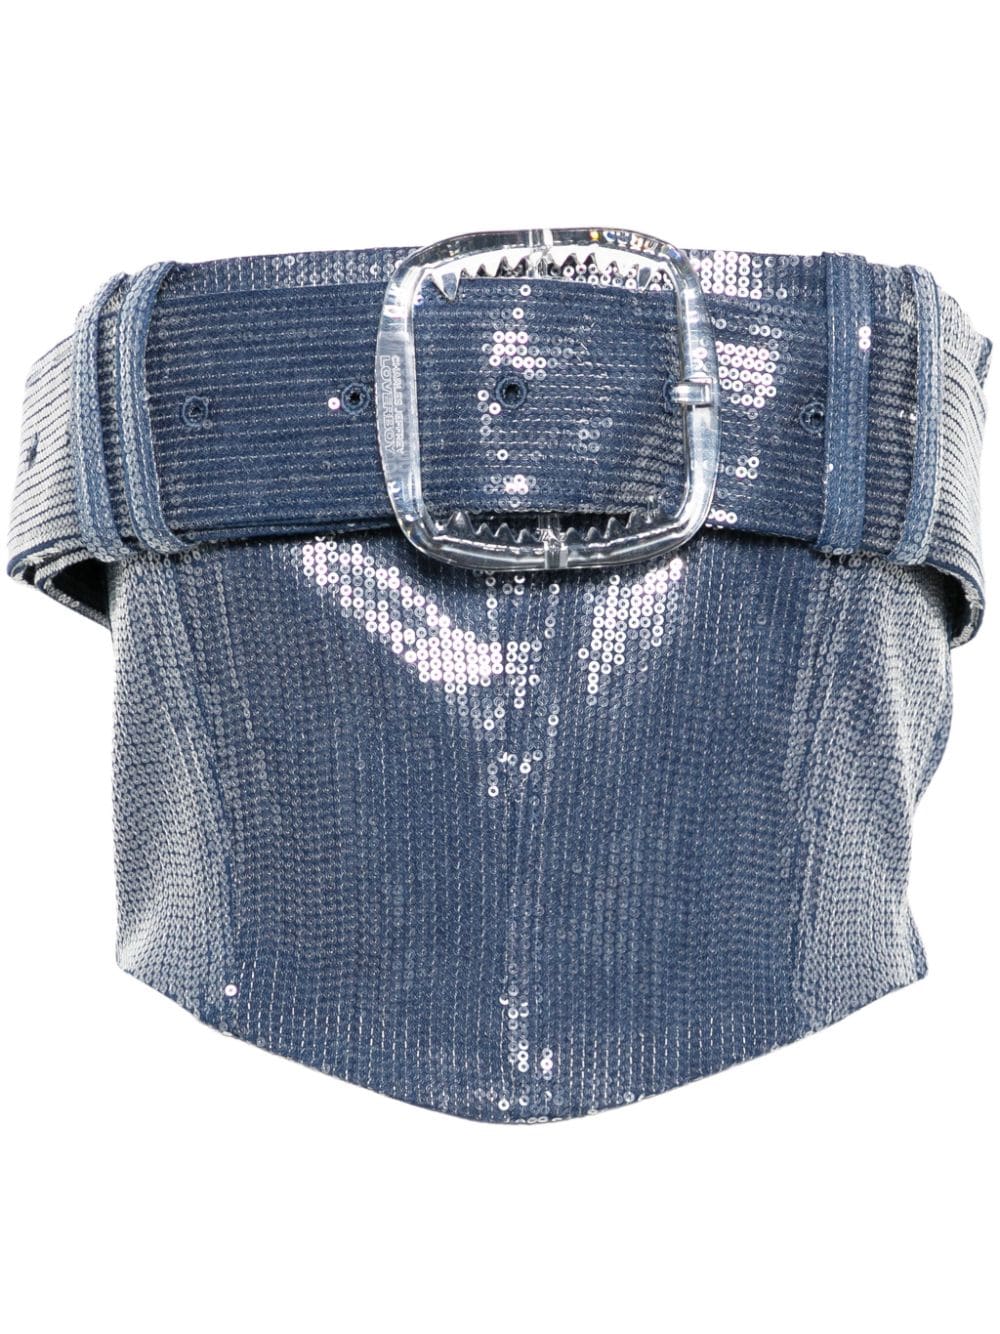 Charles Jeffrey Loverboy belt corset crop top - Blue von Charles Jeffrey Loverboy